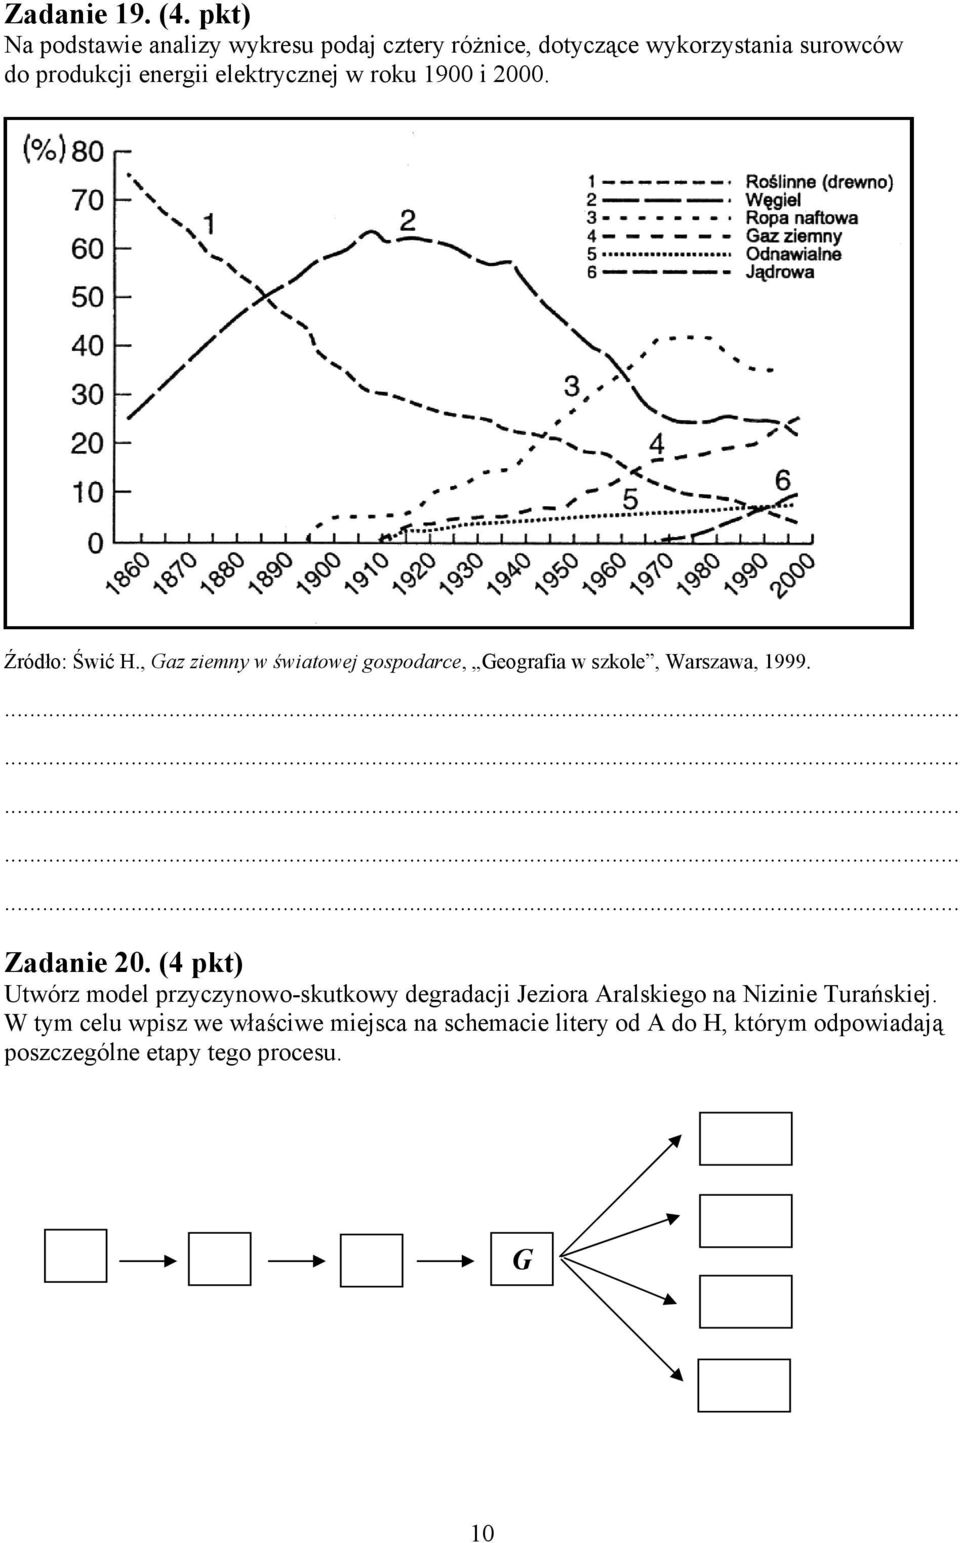 elektrycznej w roku 1900 i 2000. Źródło: Świć H., Gaz ziemny w światowej gospodarce, Geografia w szkole, Warszawa, 1999.